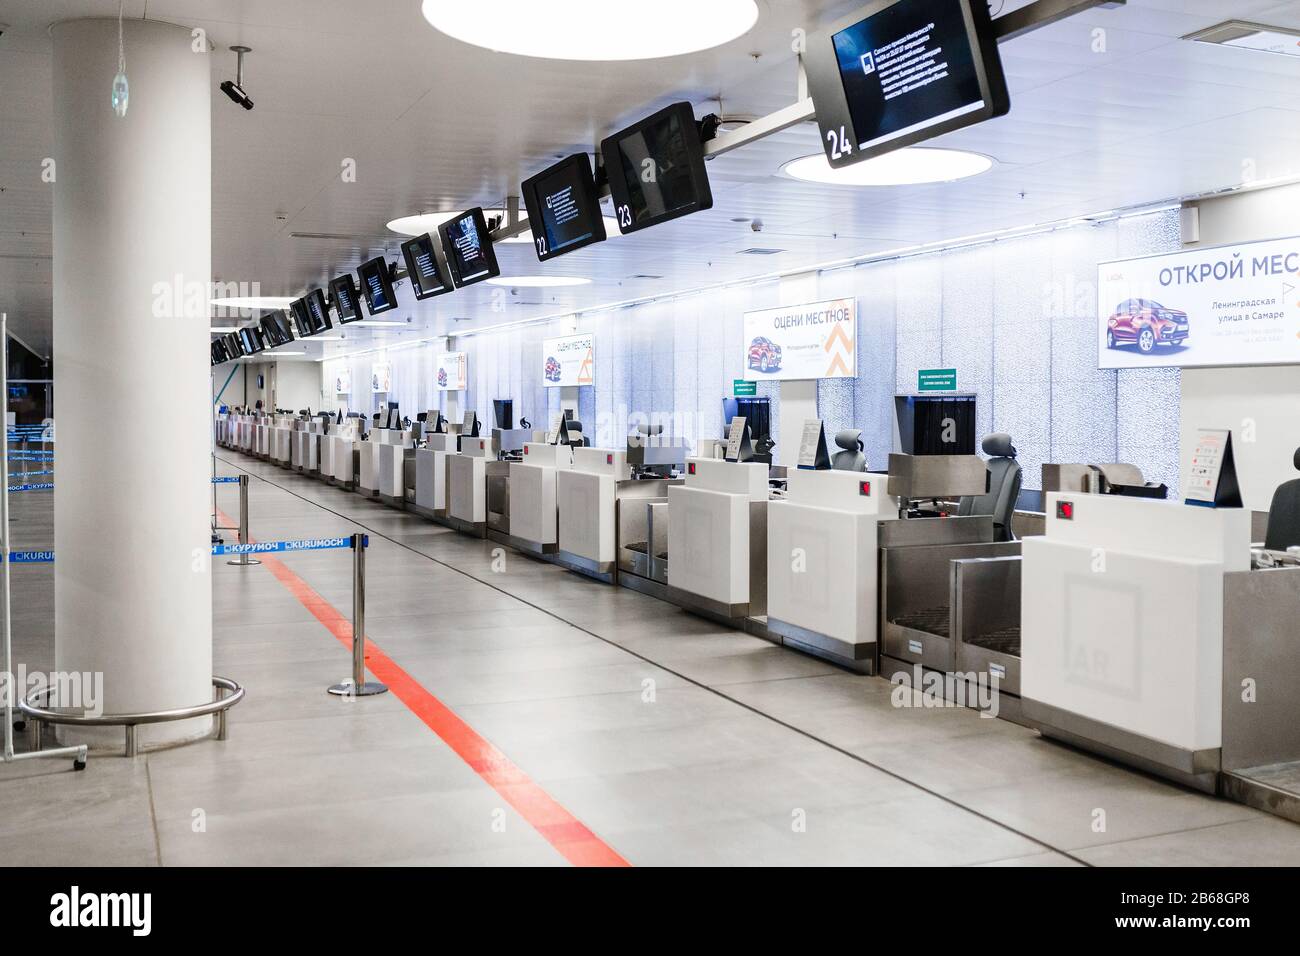 09 SEPTEMBER 2017, KURUMOCH KUF AIRPORT, SAMARA, RUSSIA: empty airport check-in counter waiting for passengers Stock Photo